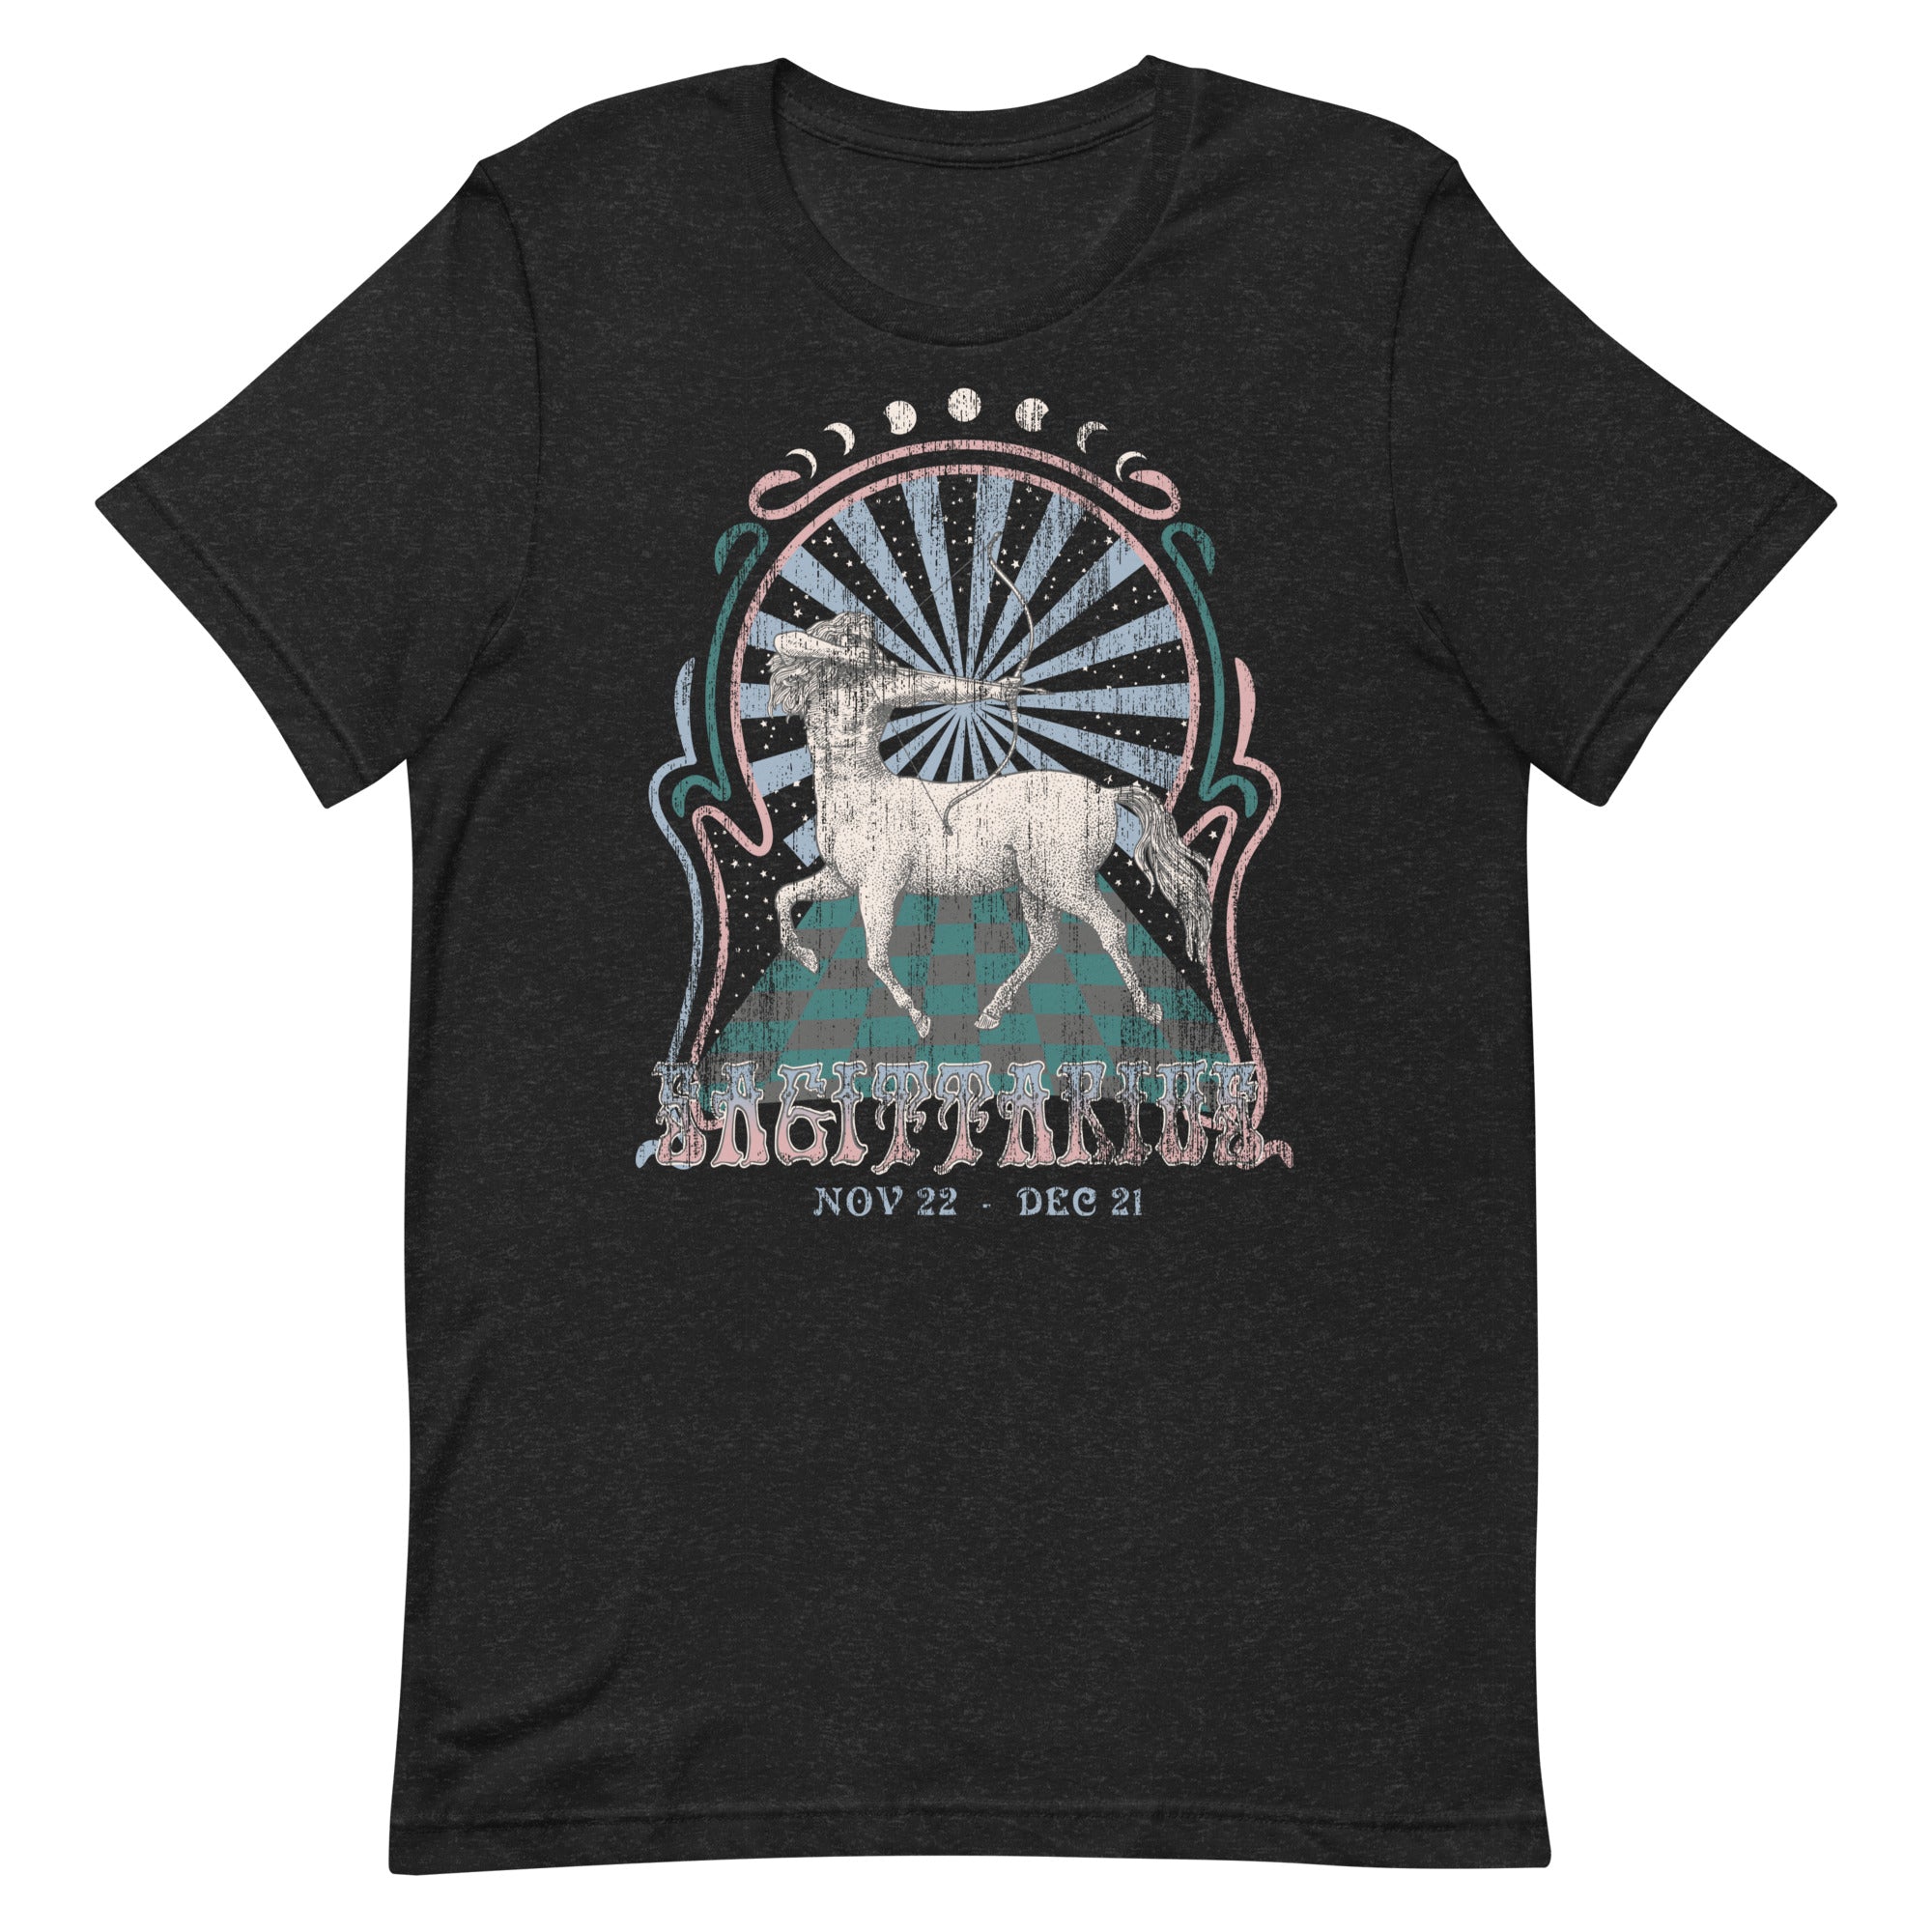 Sagittarius Band T-Shirt Inspired Graphic Tee